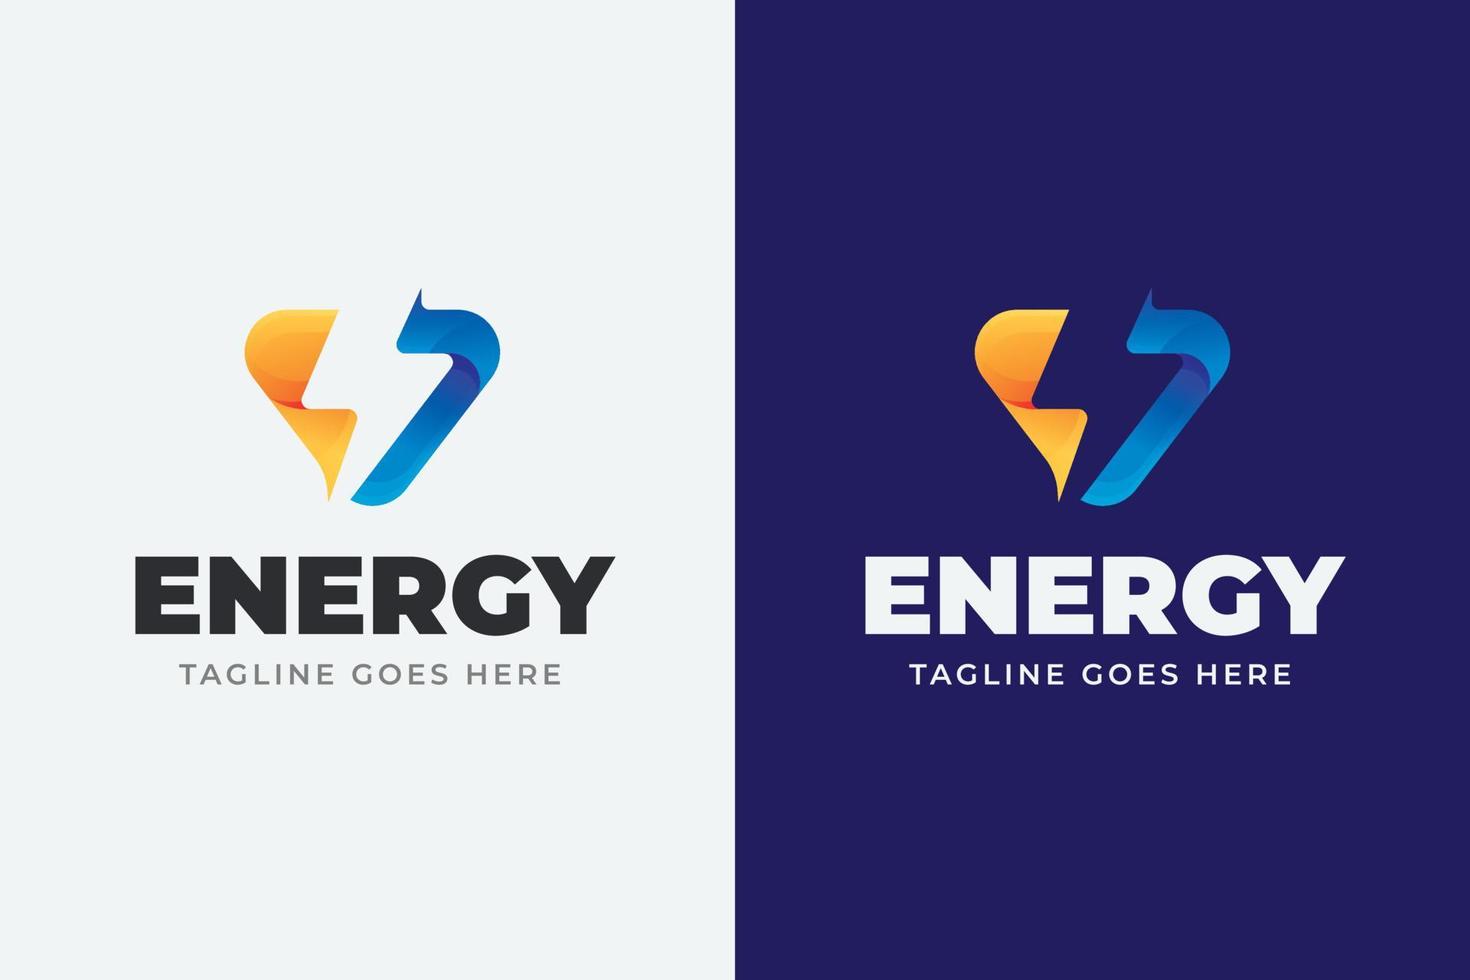 gradiente plano Projeto energia logotipo modelo vetor